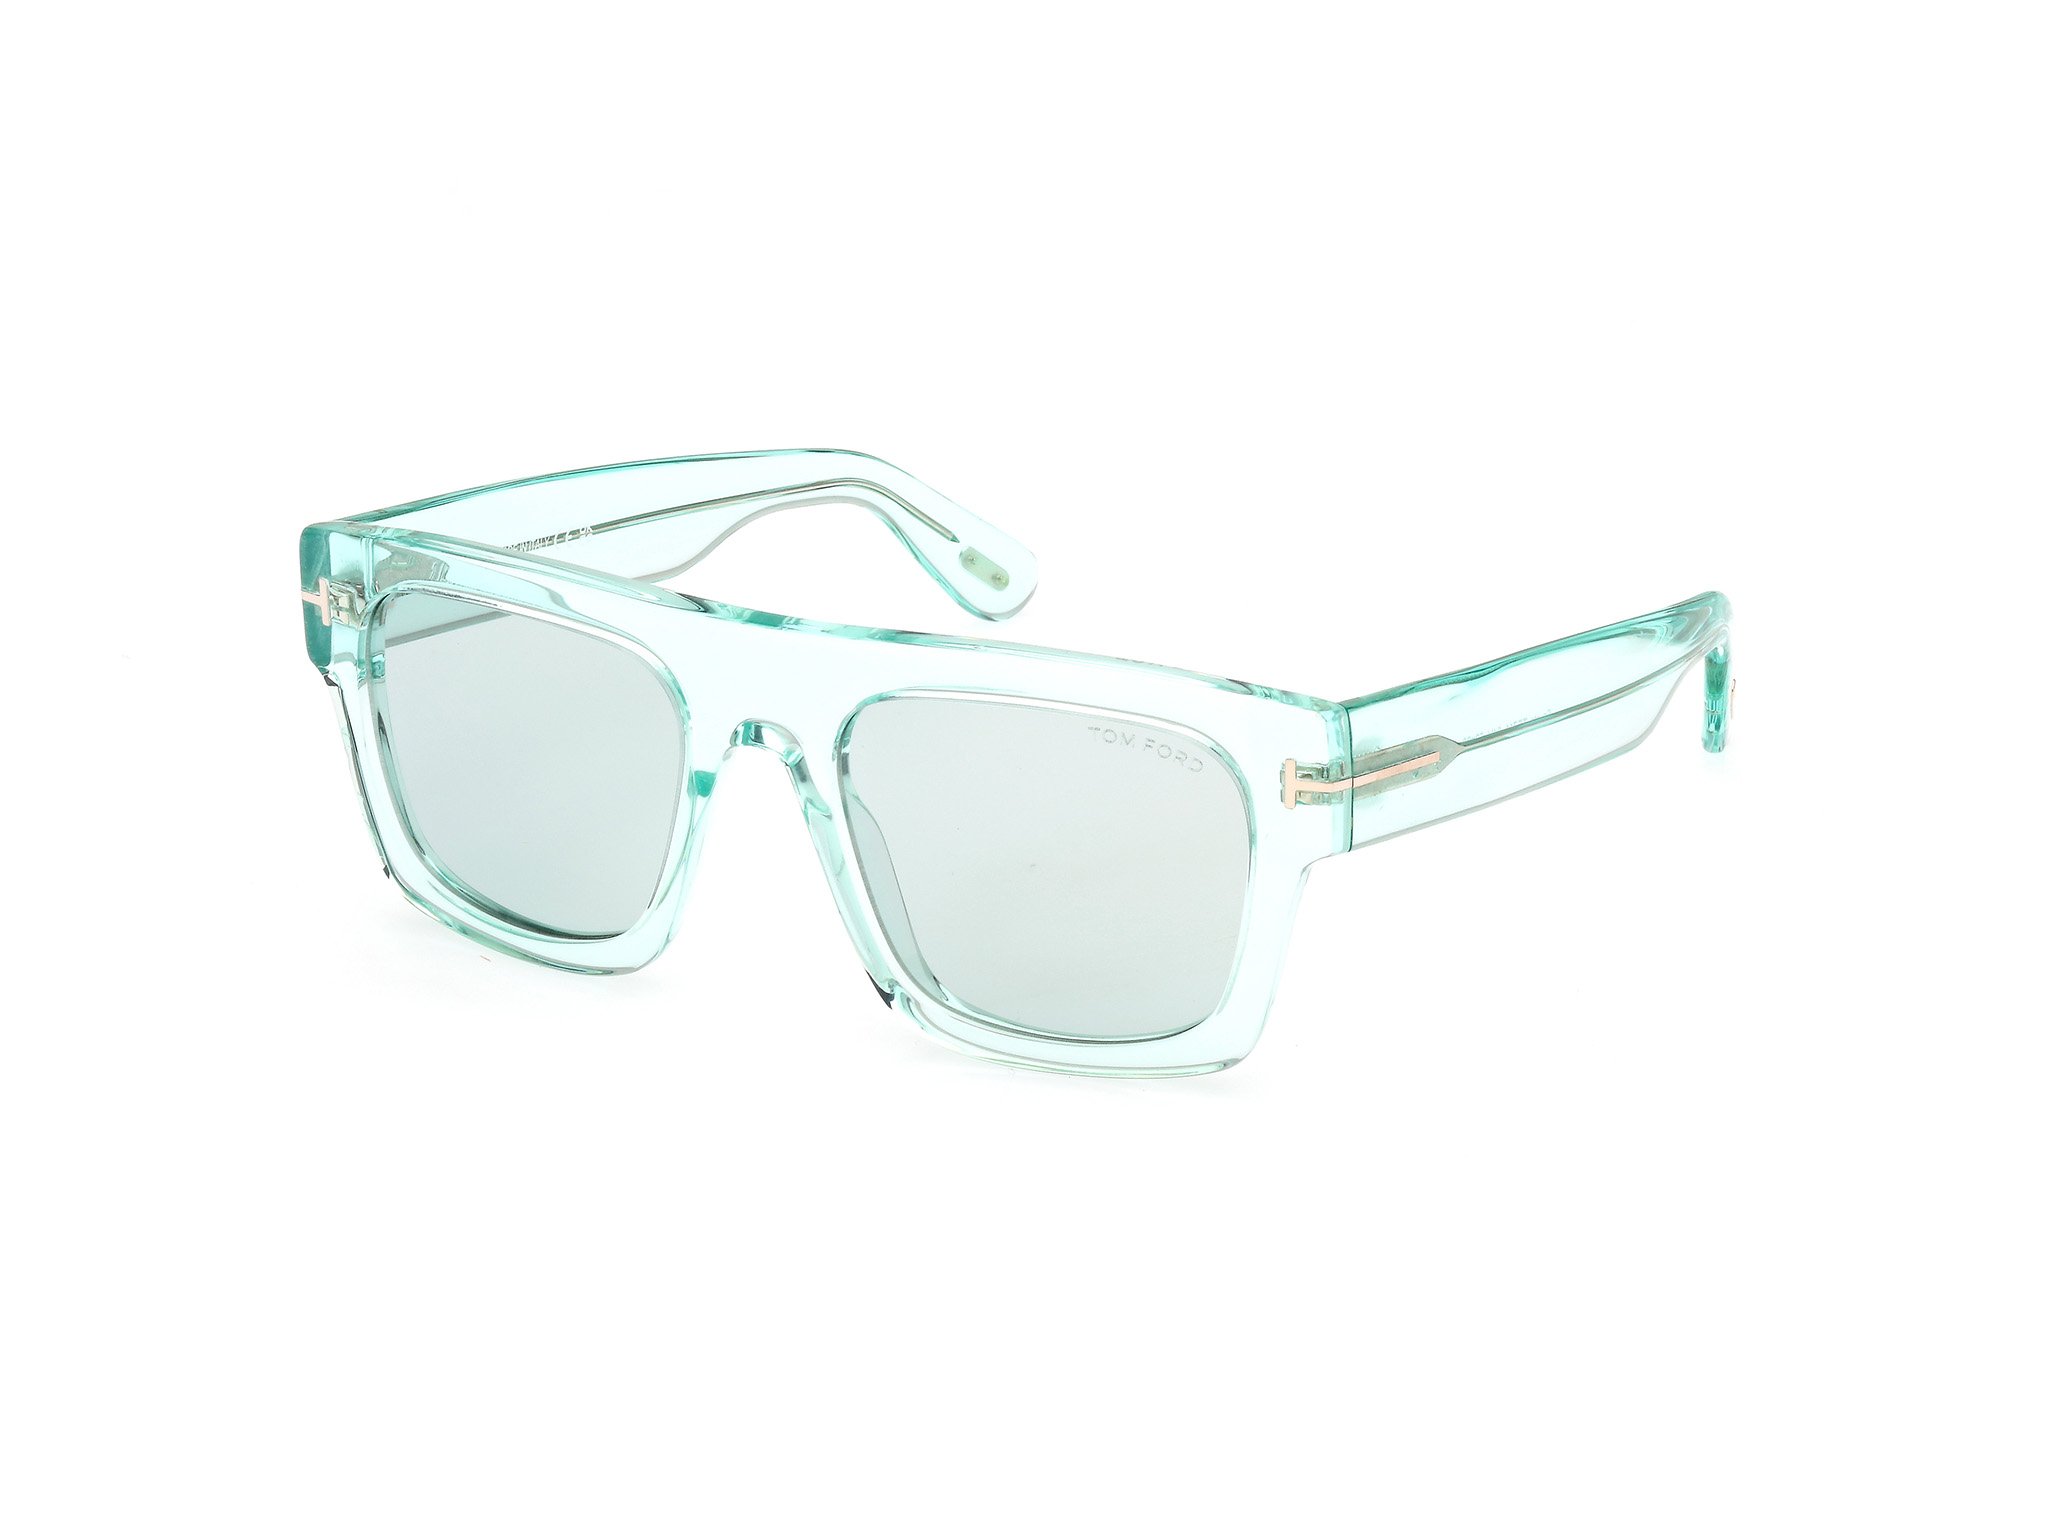 Das Bild zeigt die Sonnenbrille FT0711 84V von der Marke Tom Ford in grün.